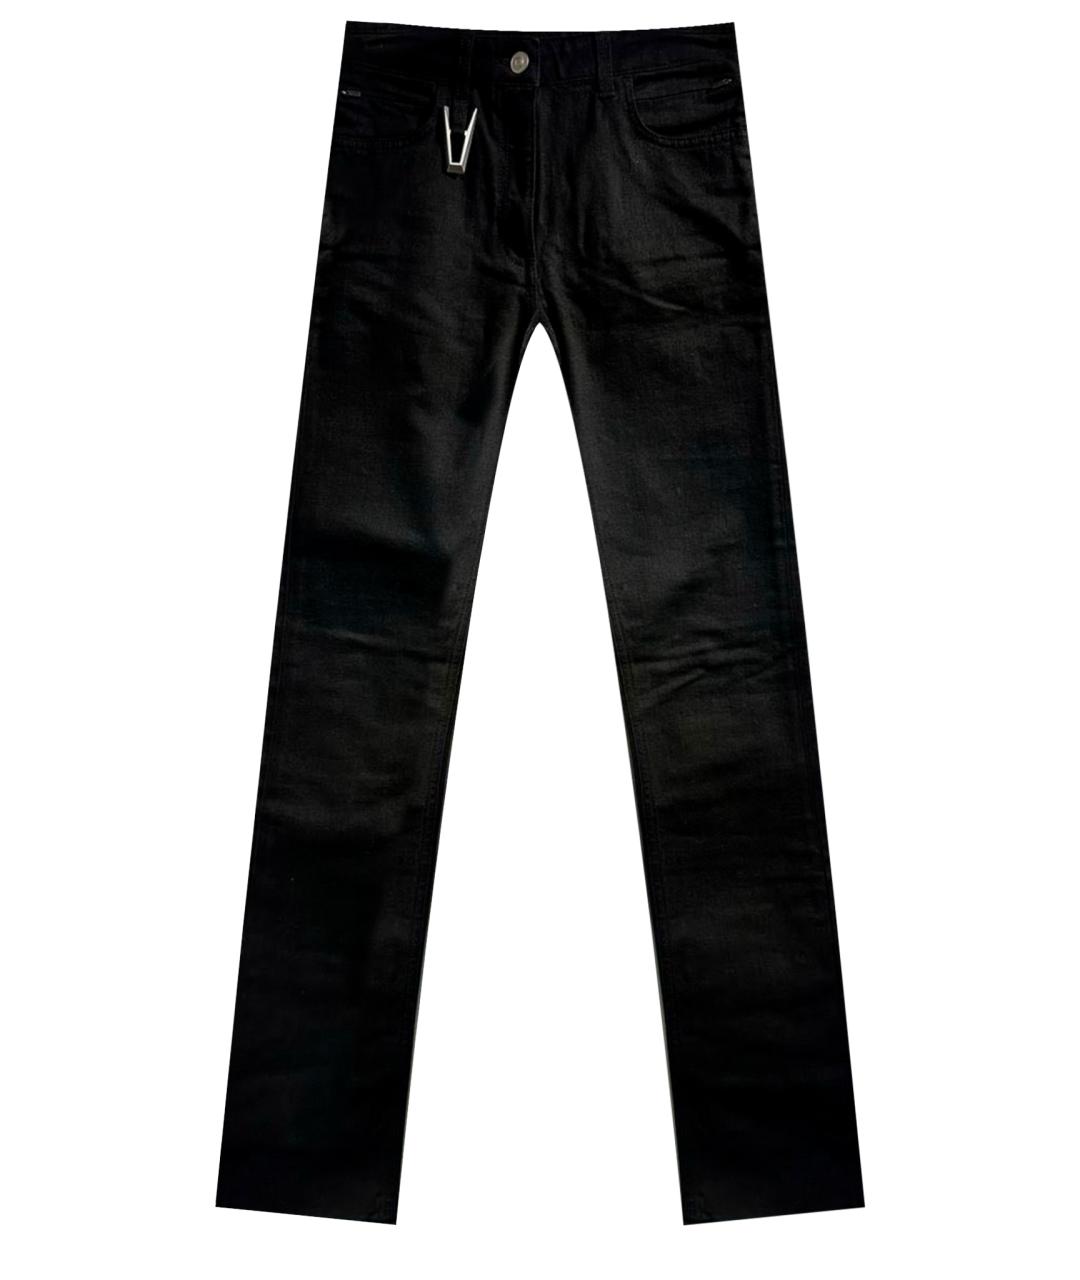 1017 ALYX 9SM Черные хлопко-полиэстеровые прямые джинсы, фото 1